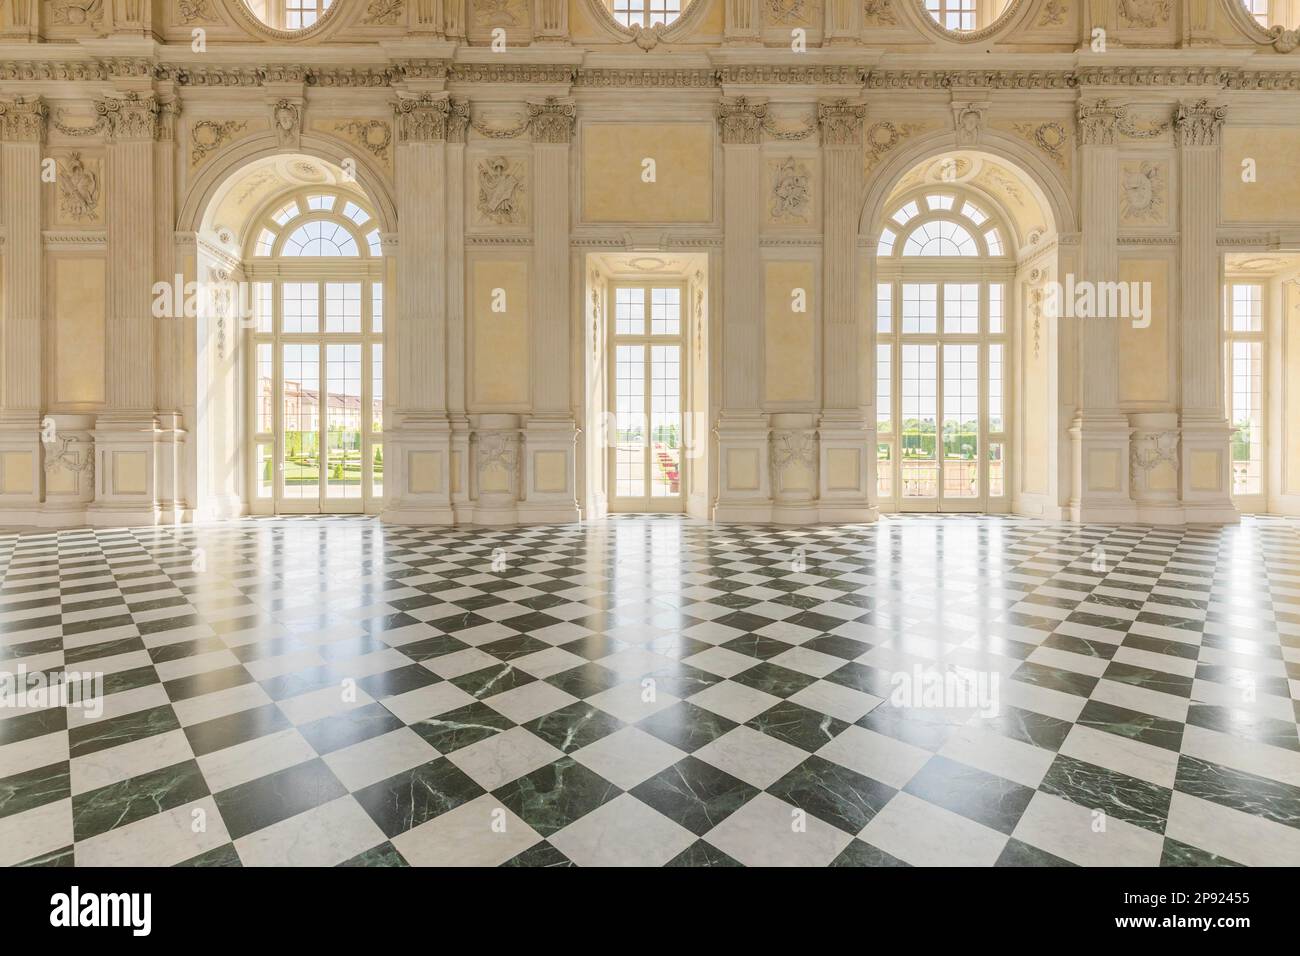 VENARIA REALE, ITALIA - CIRCA MAGGIO 2021: Corridoio con pavimento in marmi di lusso. Grande eleganza per questo interno italiano a Venaria reale Foto Stock